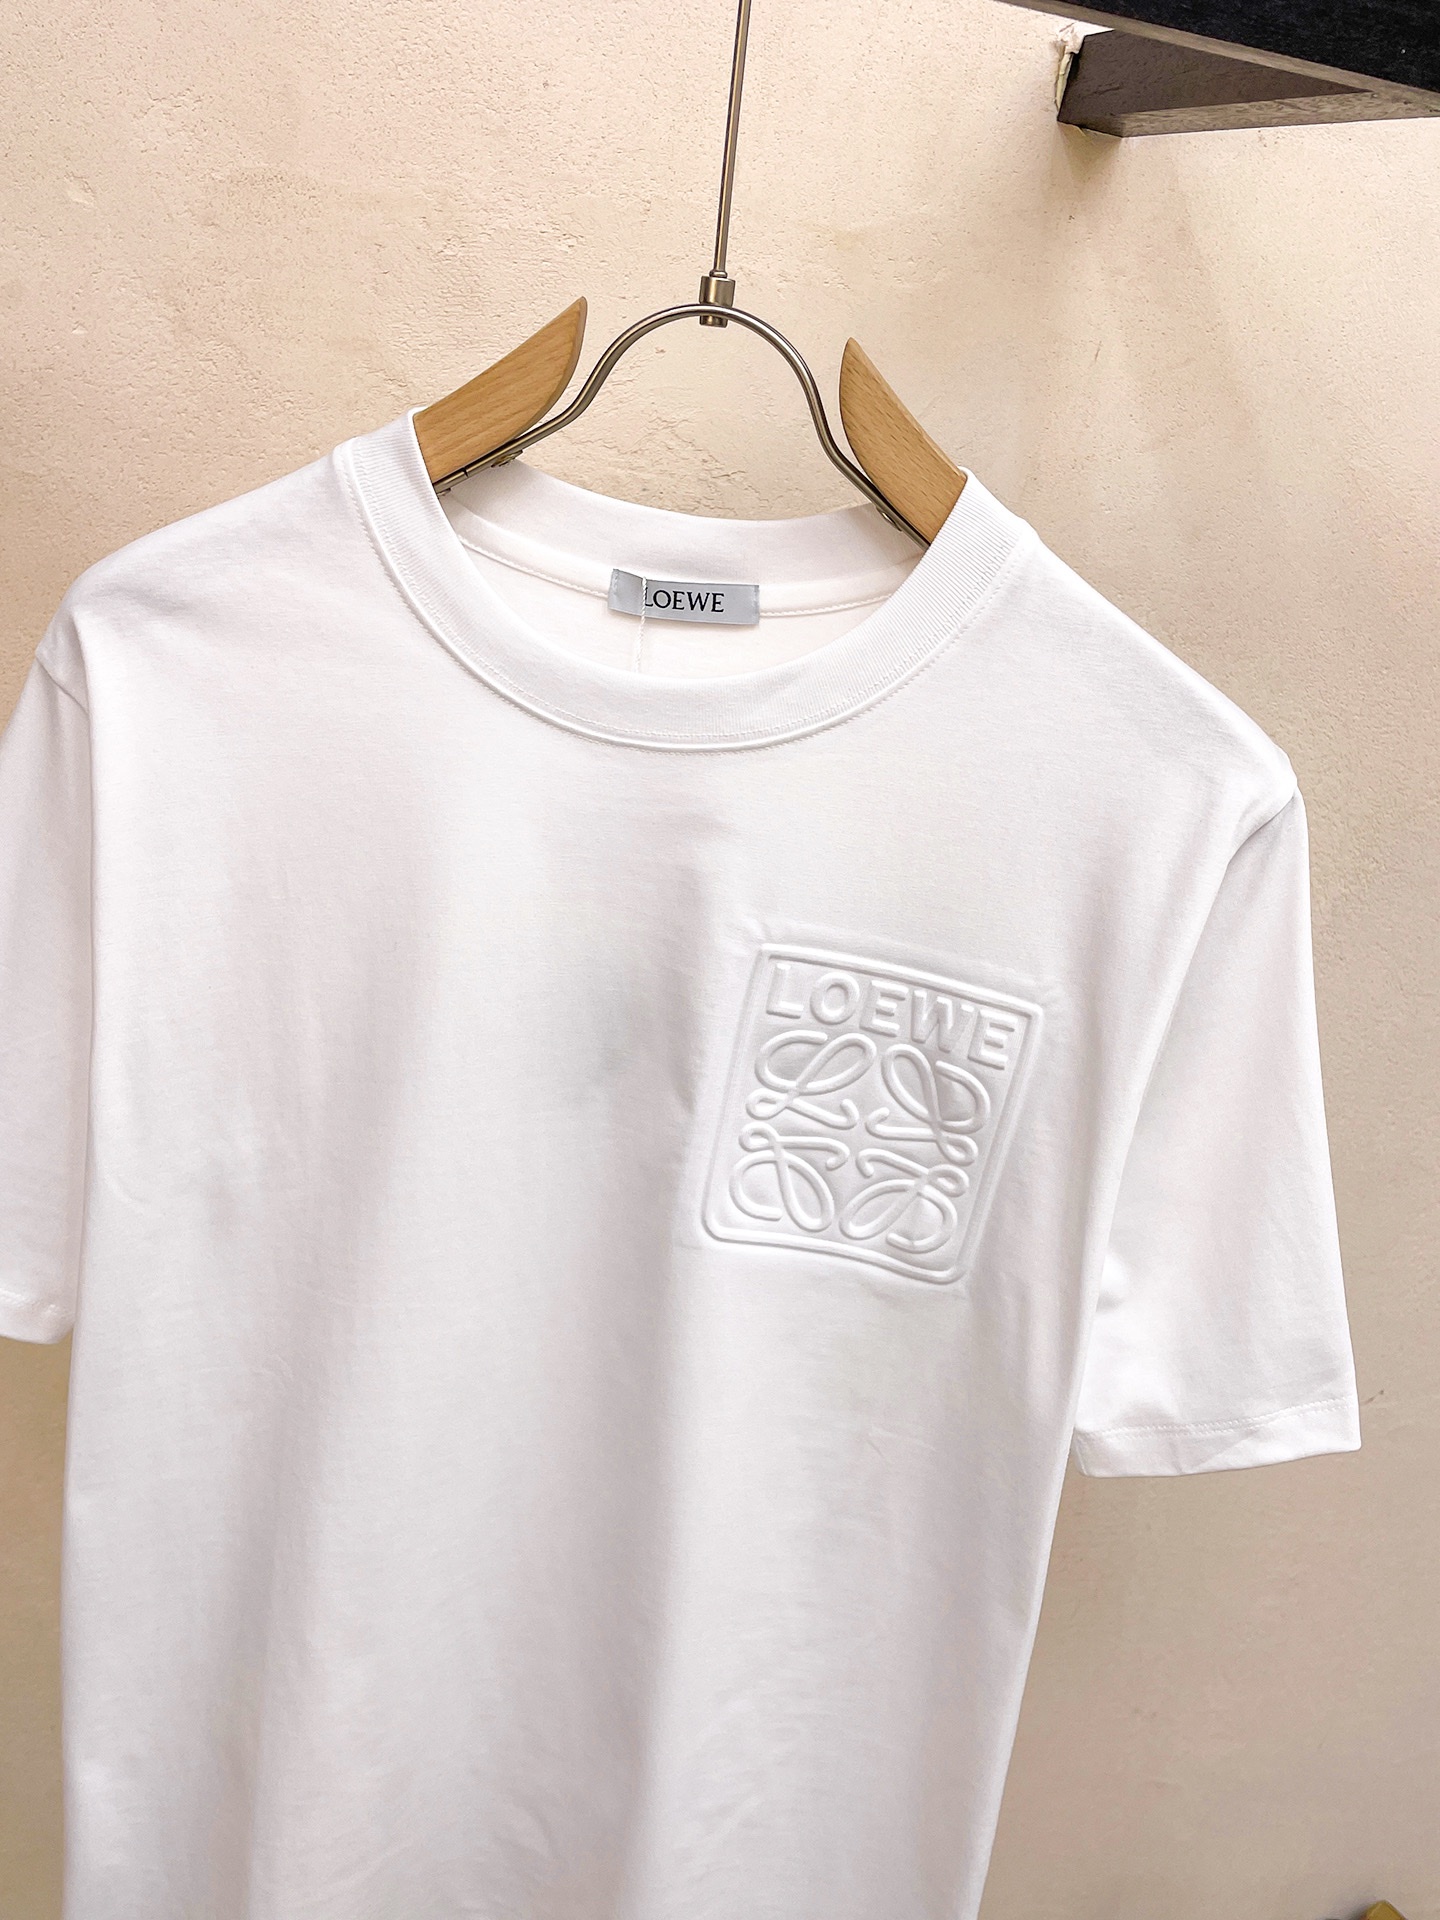 夏 新作登場 ロエベに似てるブランドＮ級品 純綿 トップス シンプル 柔らかい ファッション 短袖 Tシャツ ホワイト_3